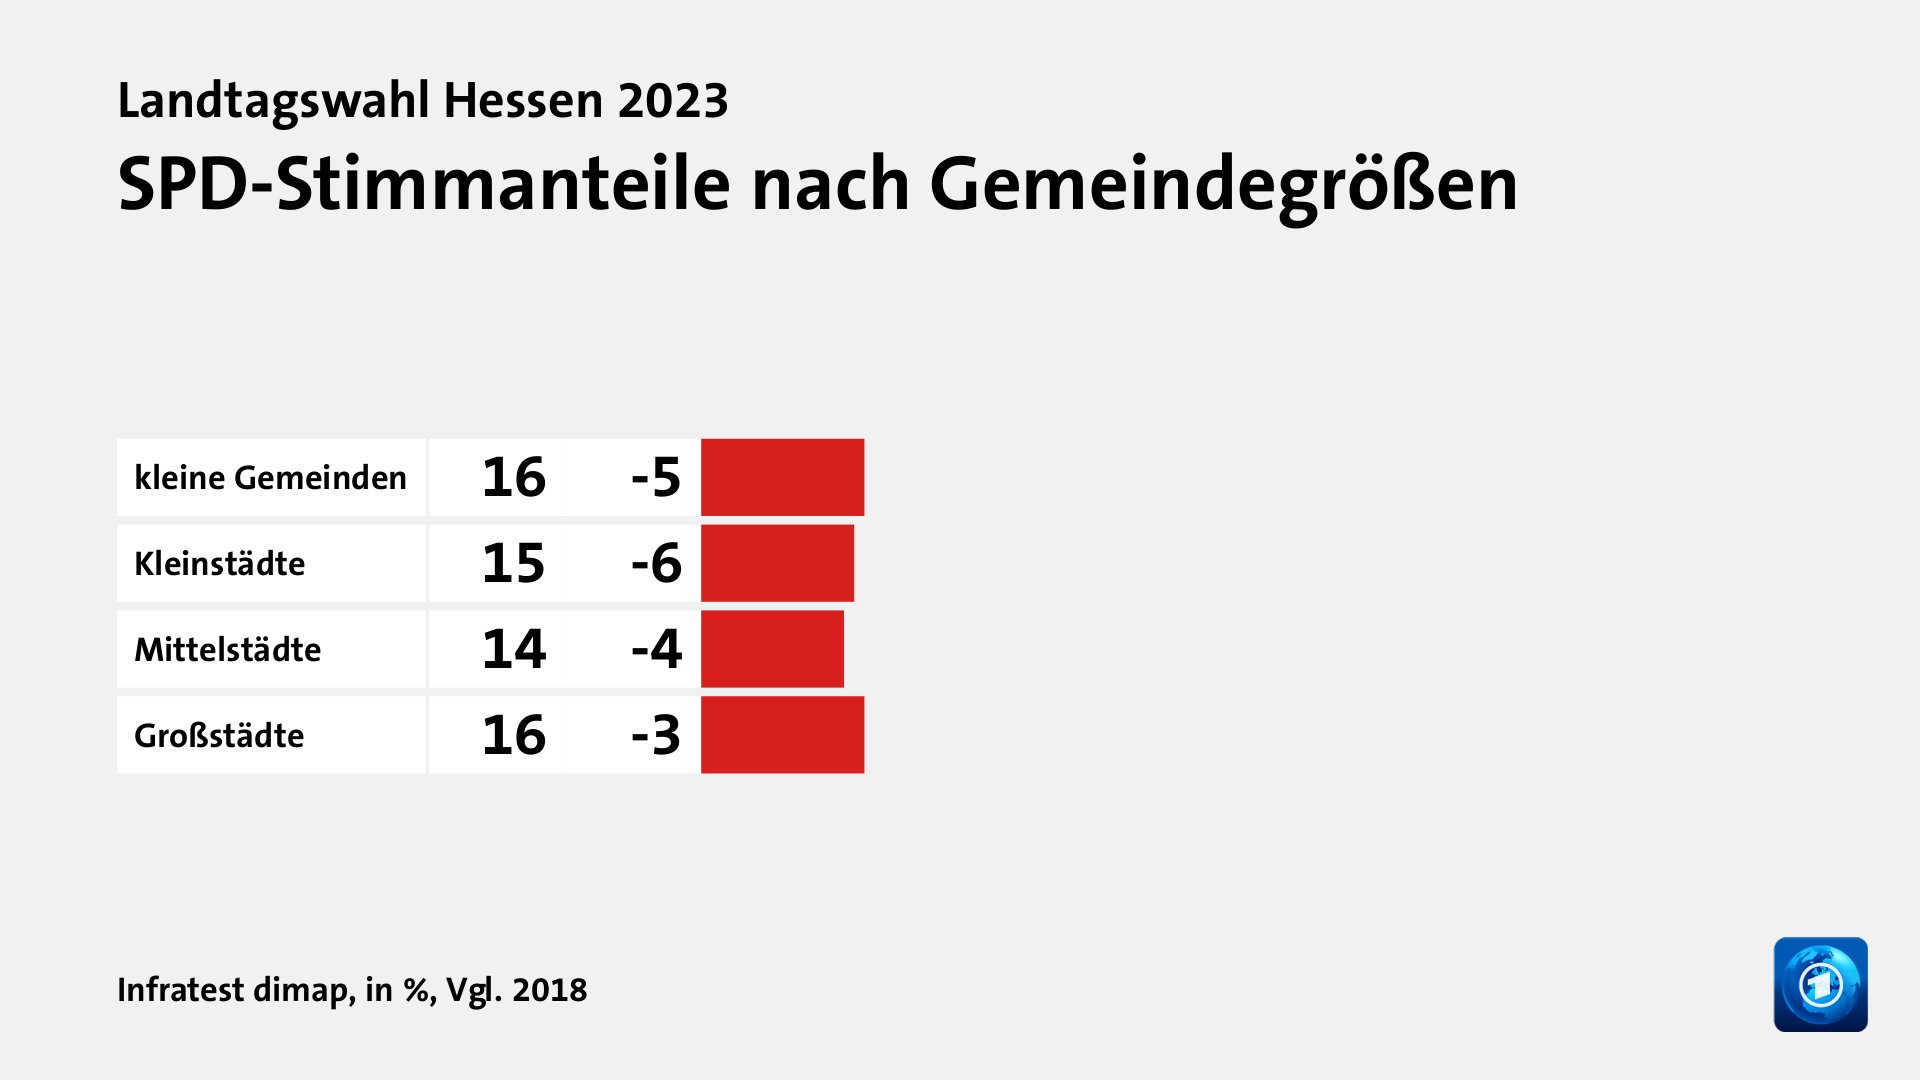 SPD-Stimmanteile nach Gemeindegrößen, in %, Vgl. 2018: kleine Gemeinden 16, Kleinstädte 15, Mittelstädte 14, Großstädte 16, Quelle: Infratest dimap